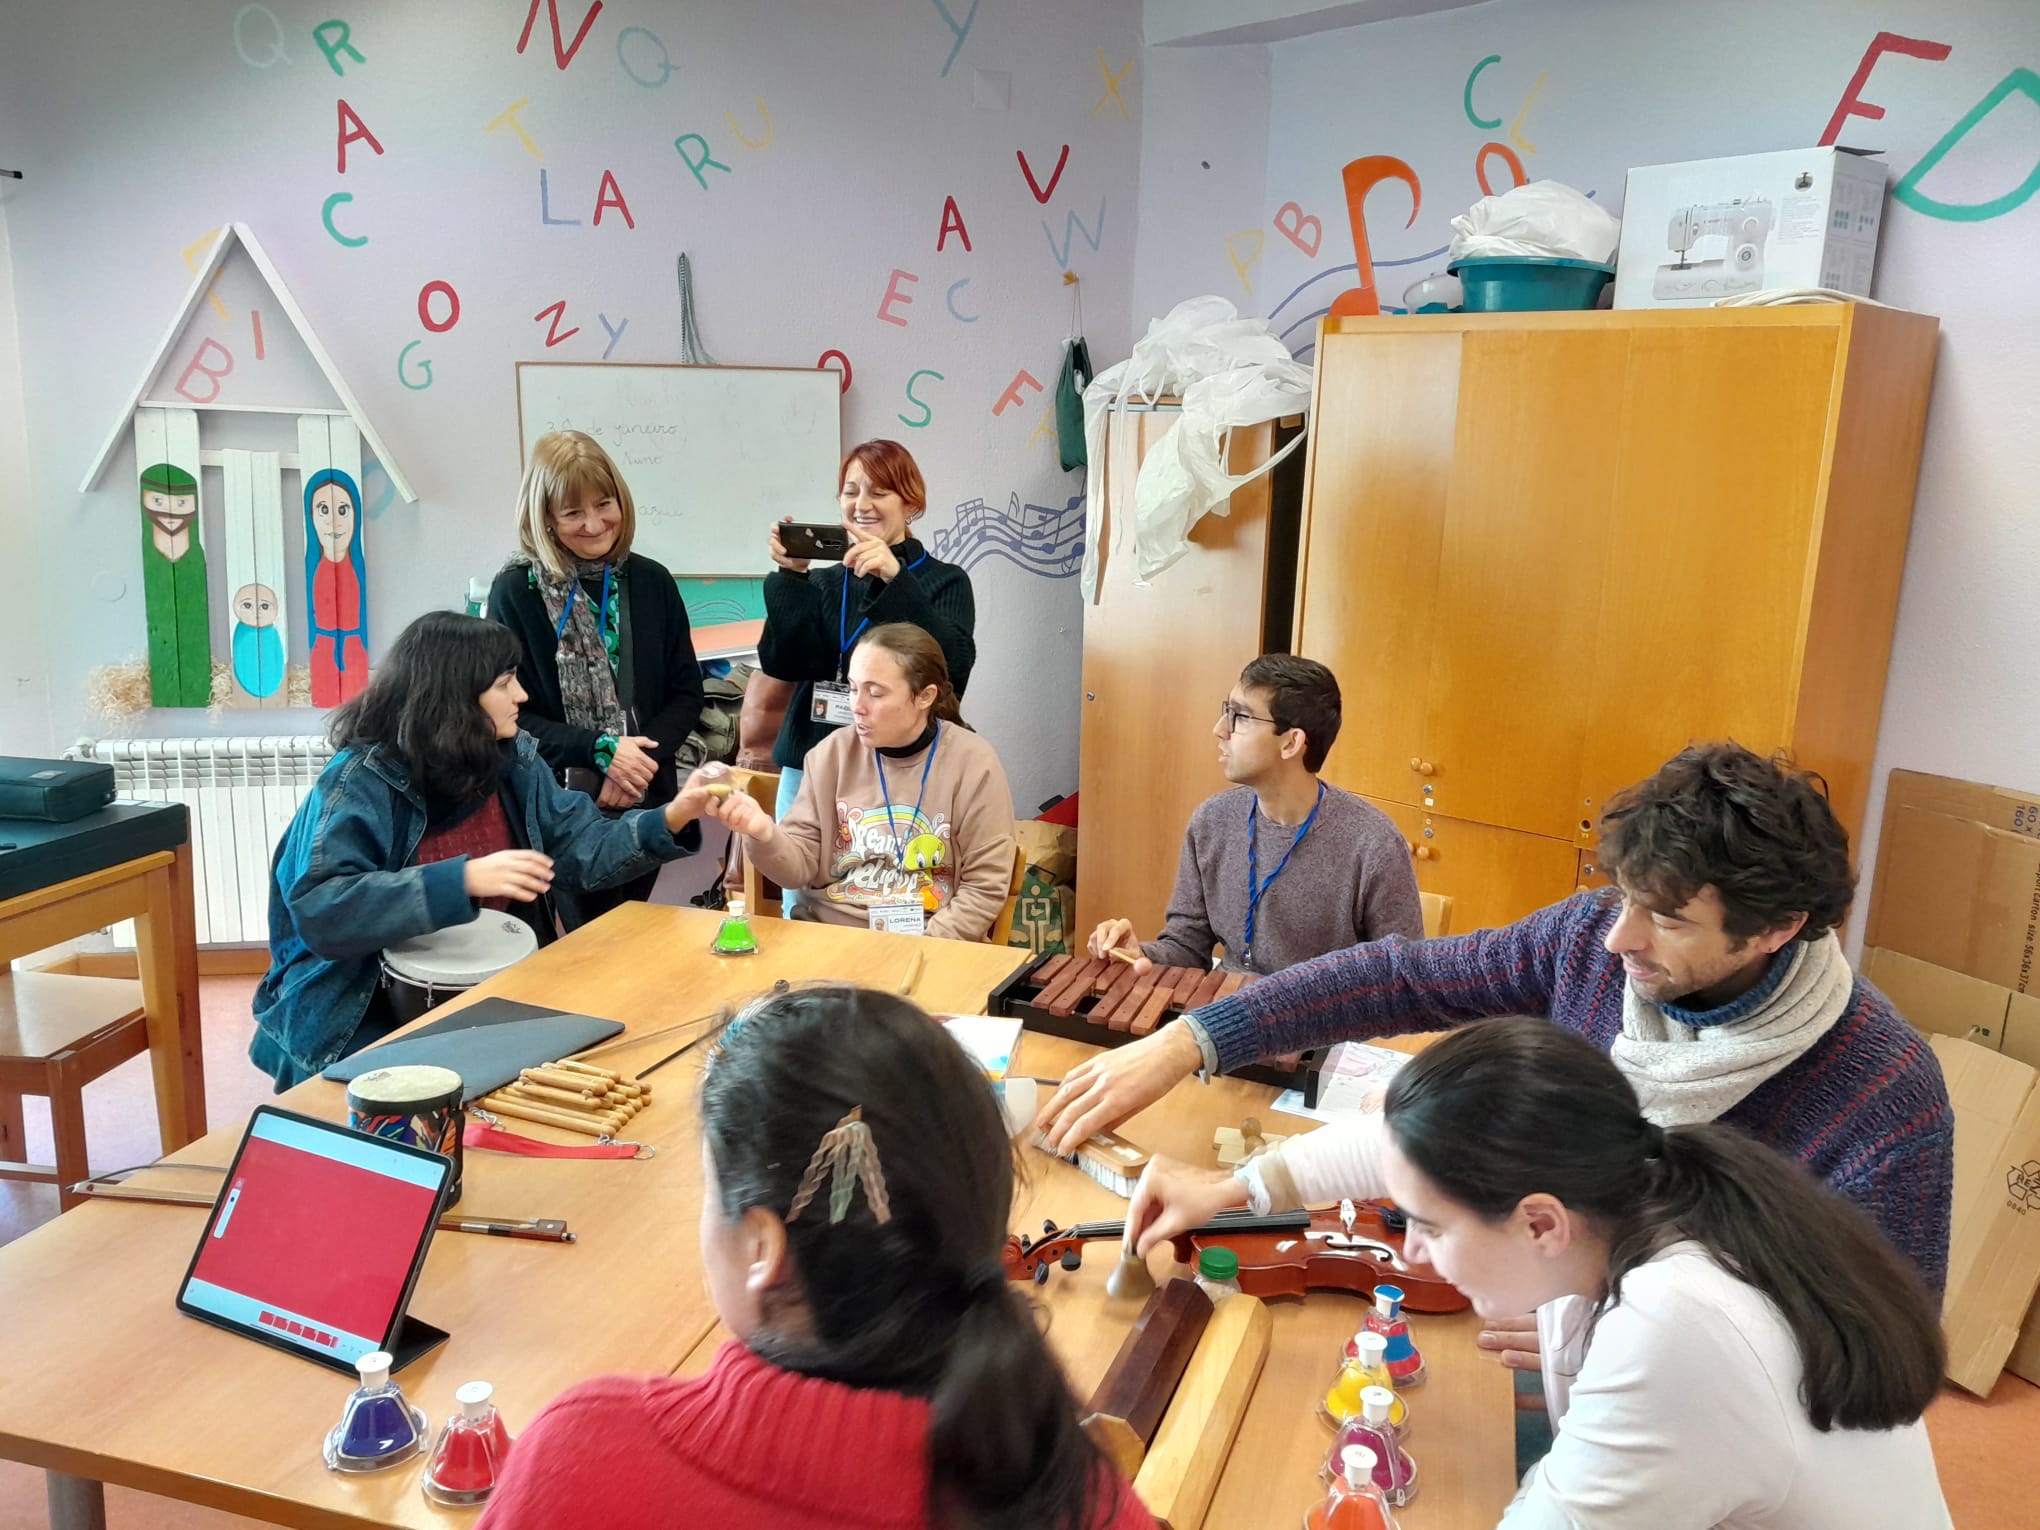 Primer dia de l'experiència educativa “Erasmus” a Portugal: l'idioma no és una barrera